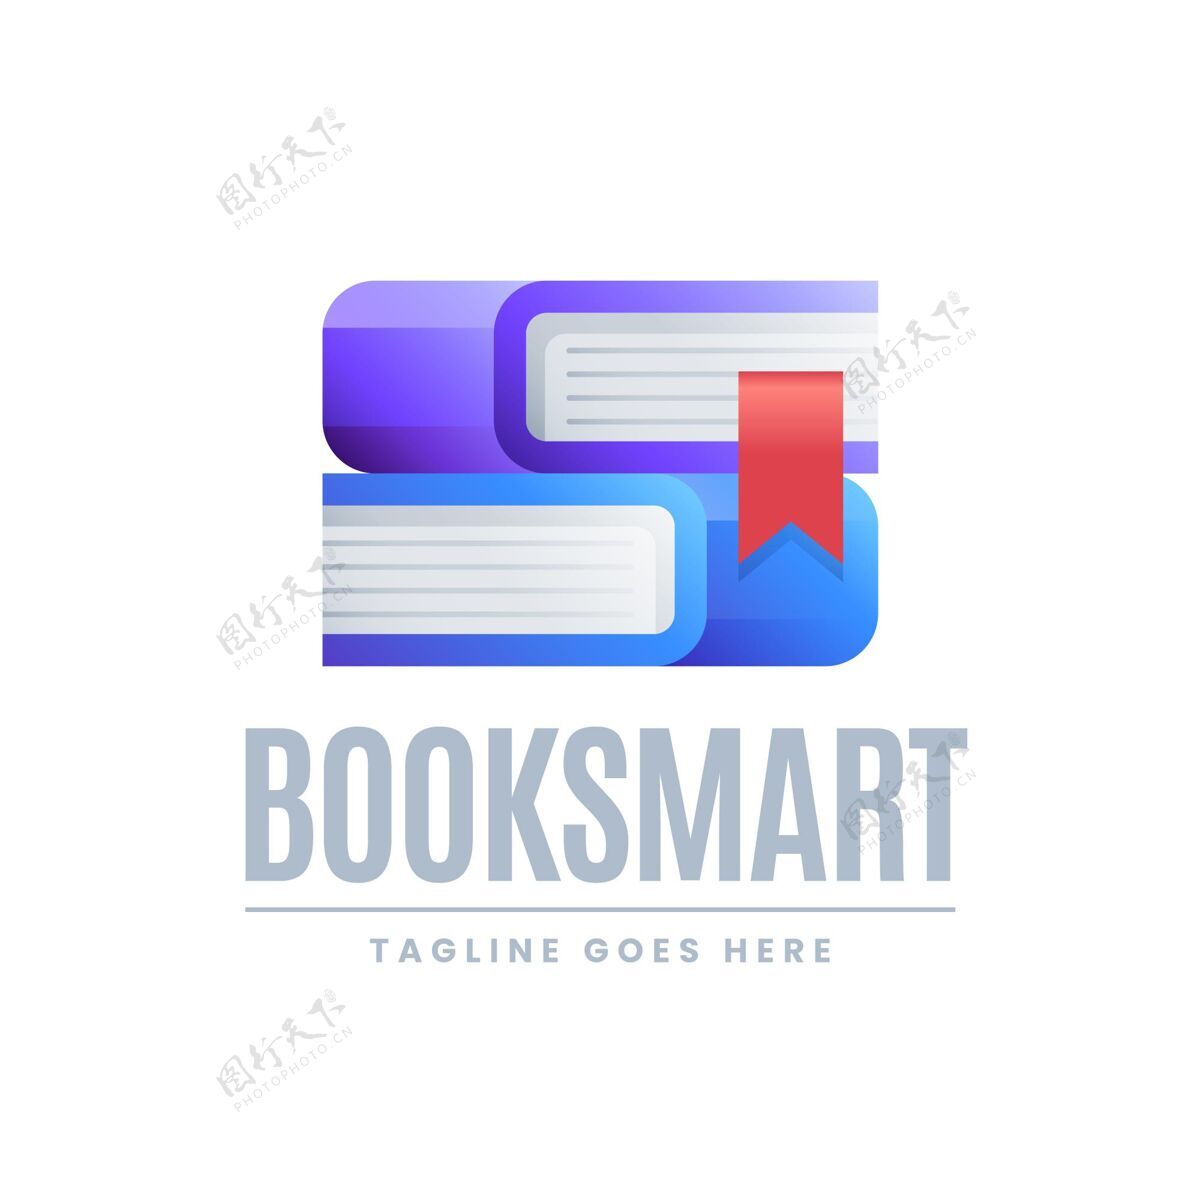 书籍Logo梯度图书标志与标语模板渐变Logo模板